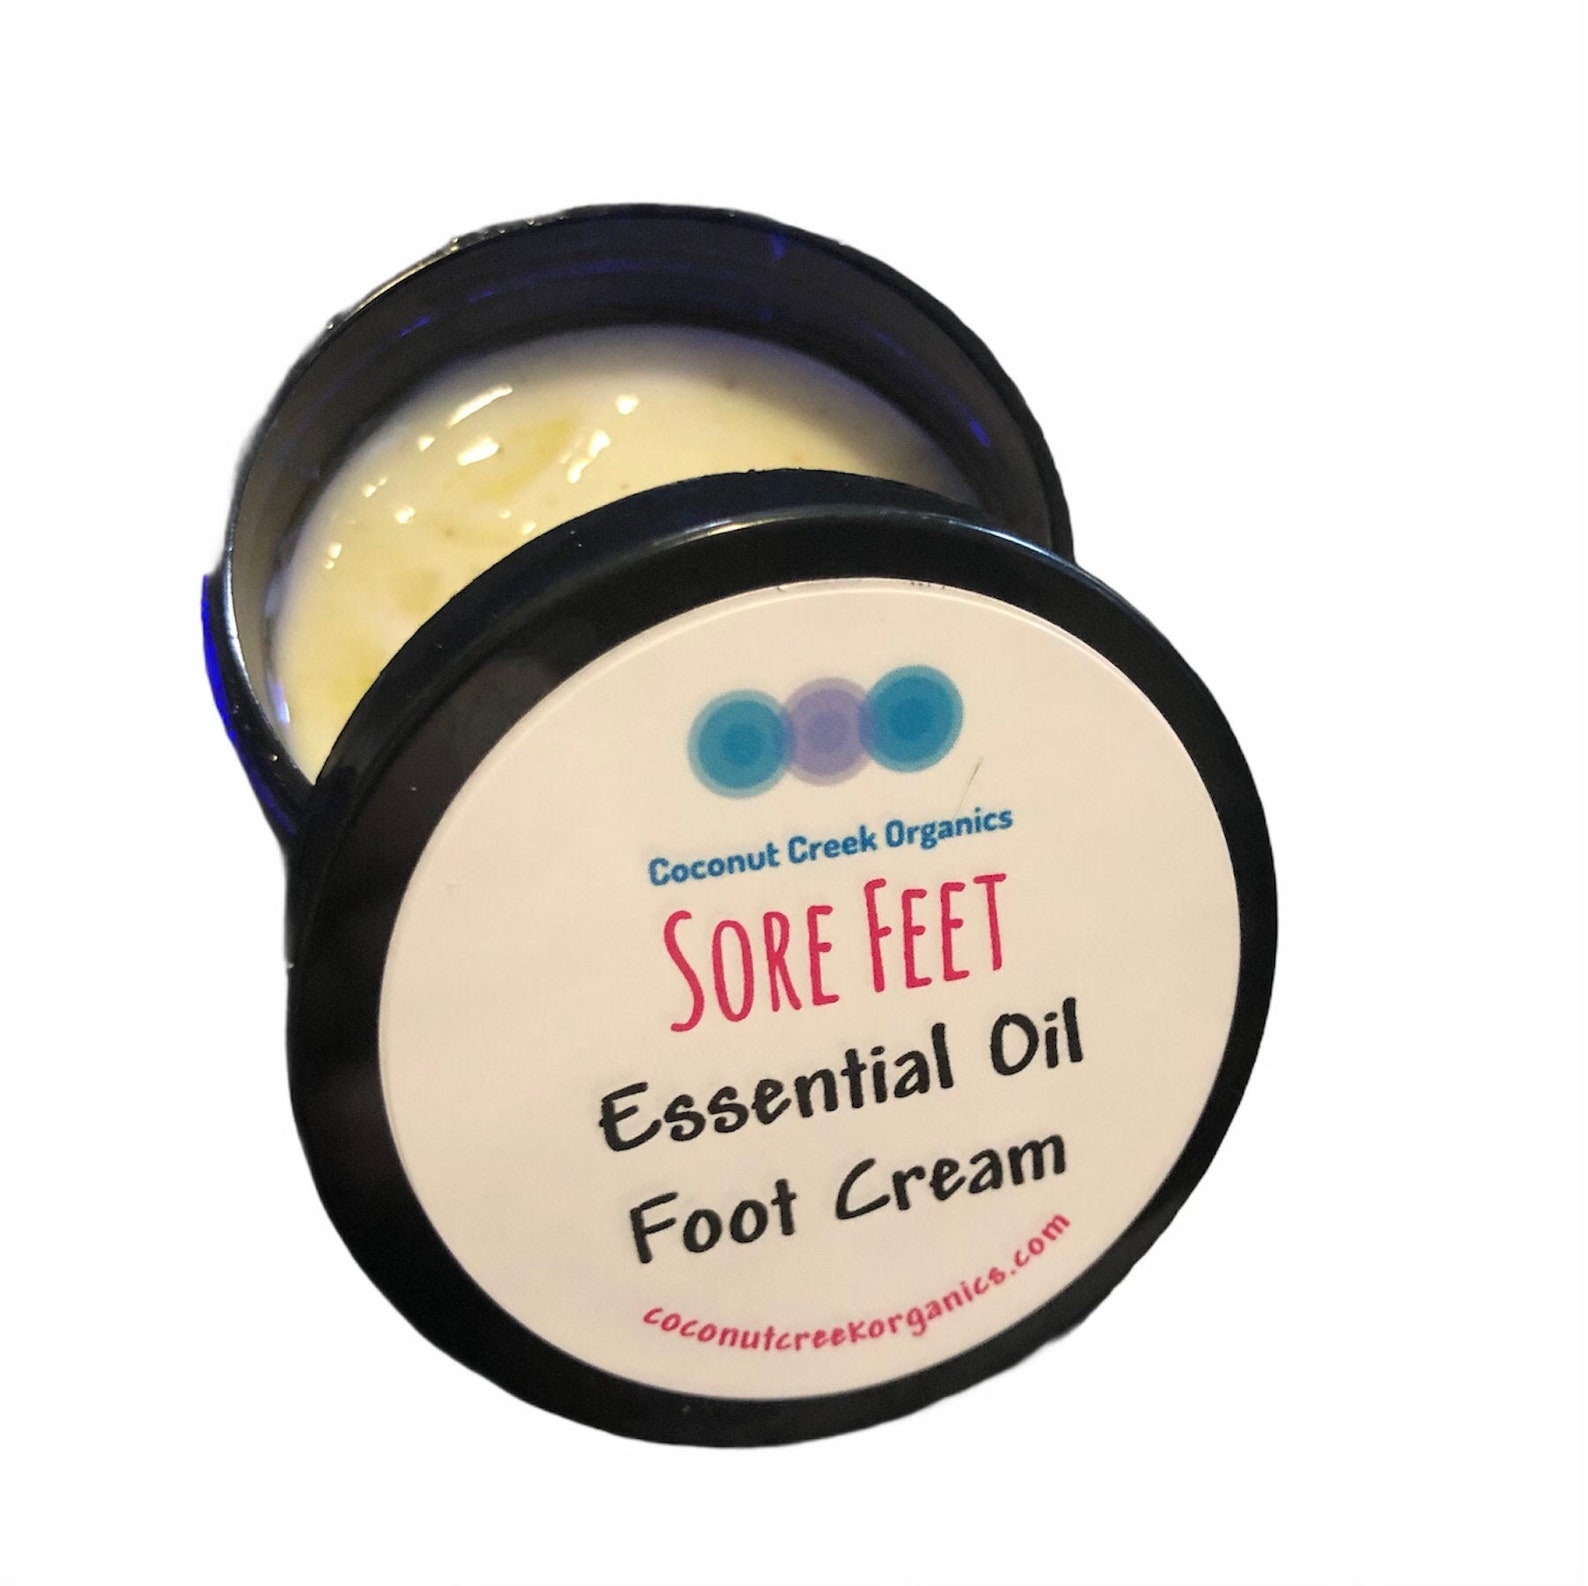 Sore Feet Essential Oil Foot Cream Etsy